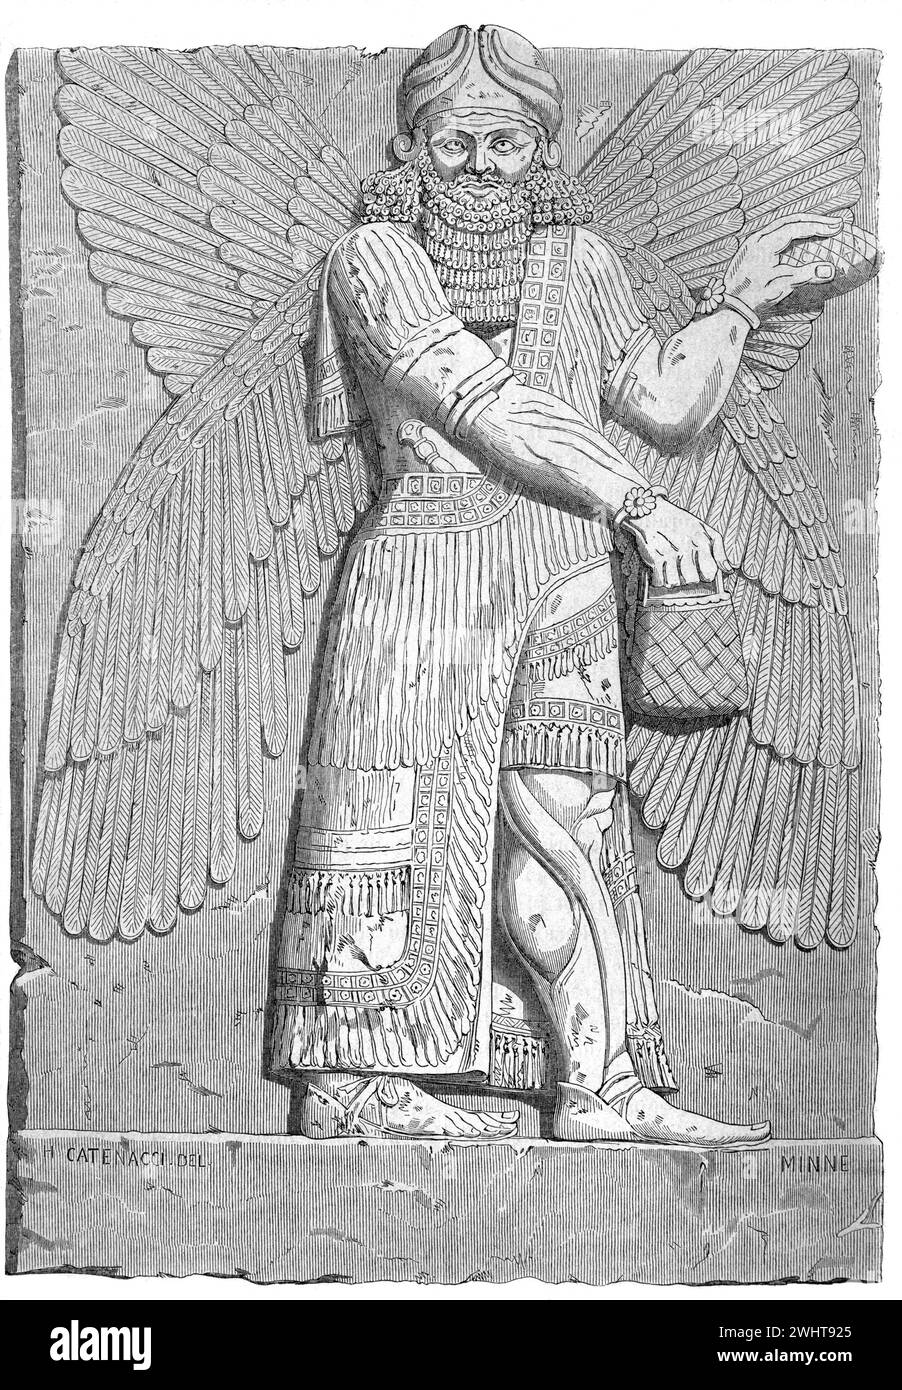 Assyrisches Relief, Bas Relief oder Steinschnitzerei eines bärtigen Assyrischen Mannes oder einer geflügelten Figur aus Dur-Sharrukin, dem heutigen Khorsabad im Nordirak. Vintage oder historische Gravur oder Illustration 1863 Stockfoto